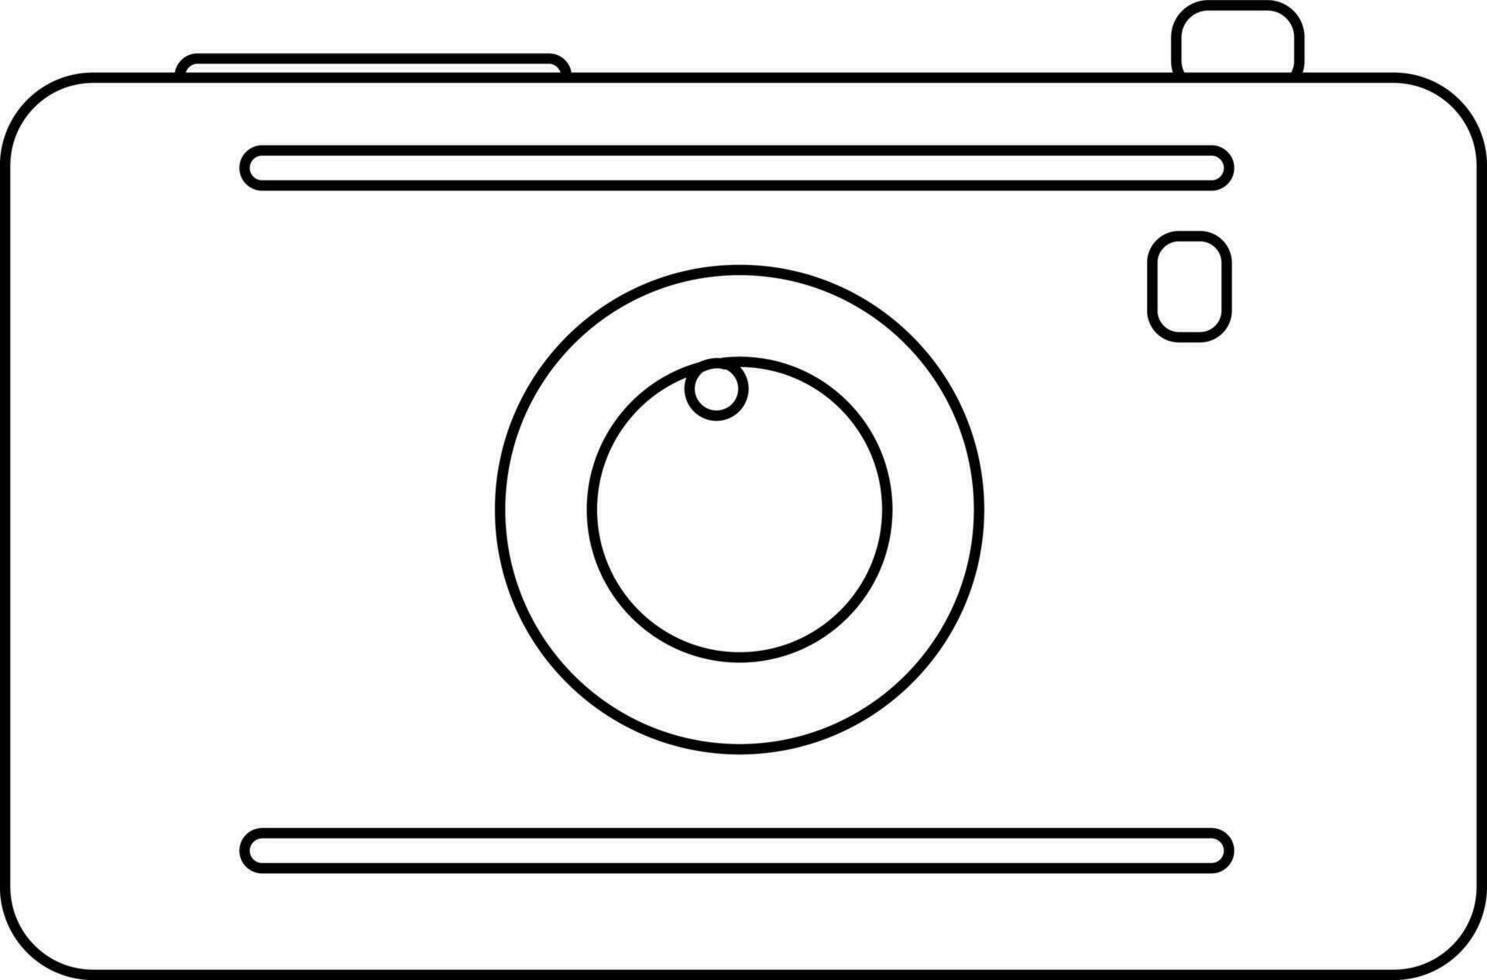 Camera in black line art illustration. vector